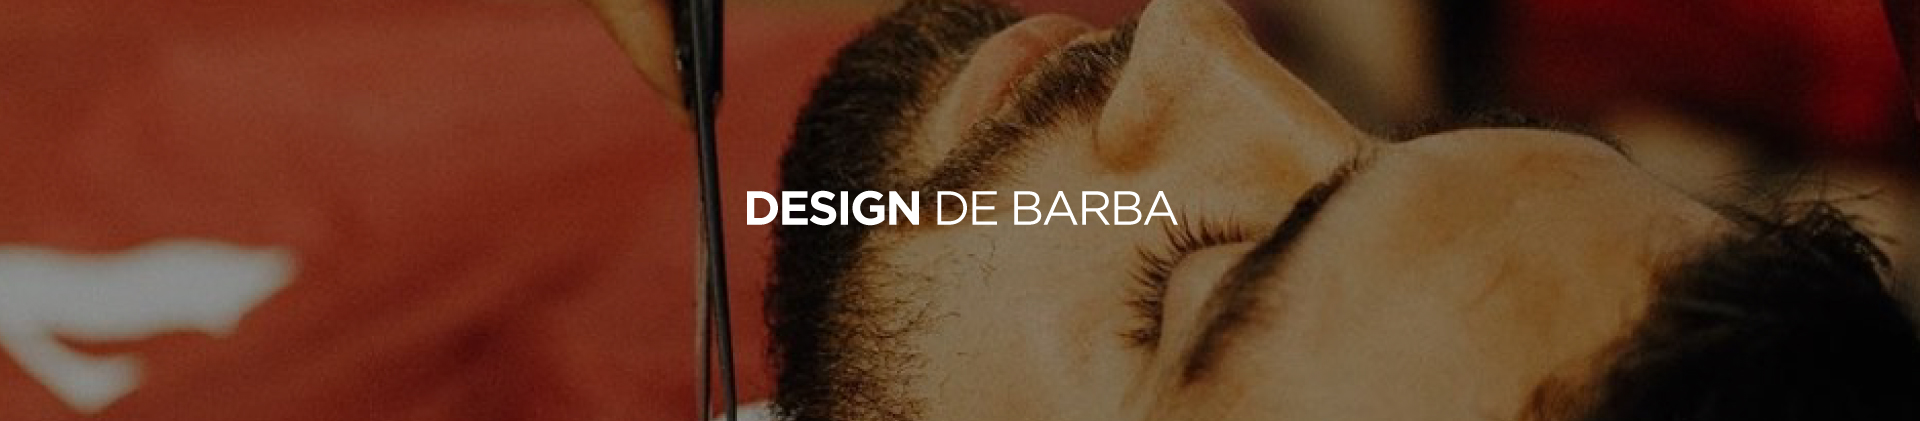 Design de barba em Curitiba